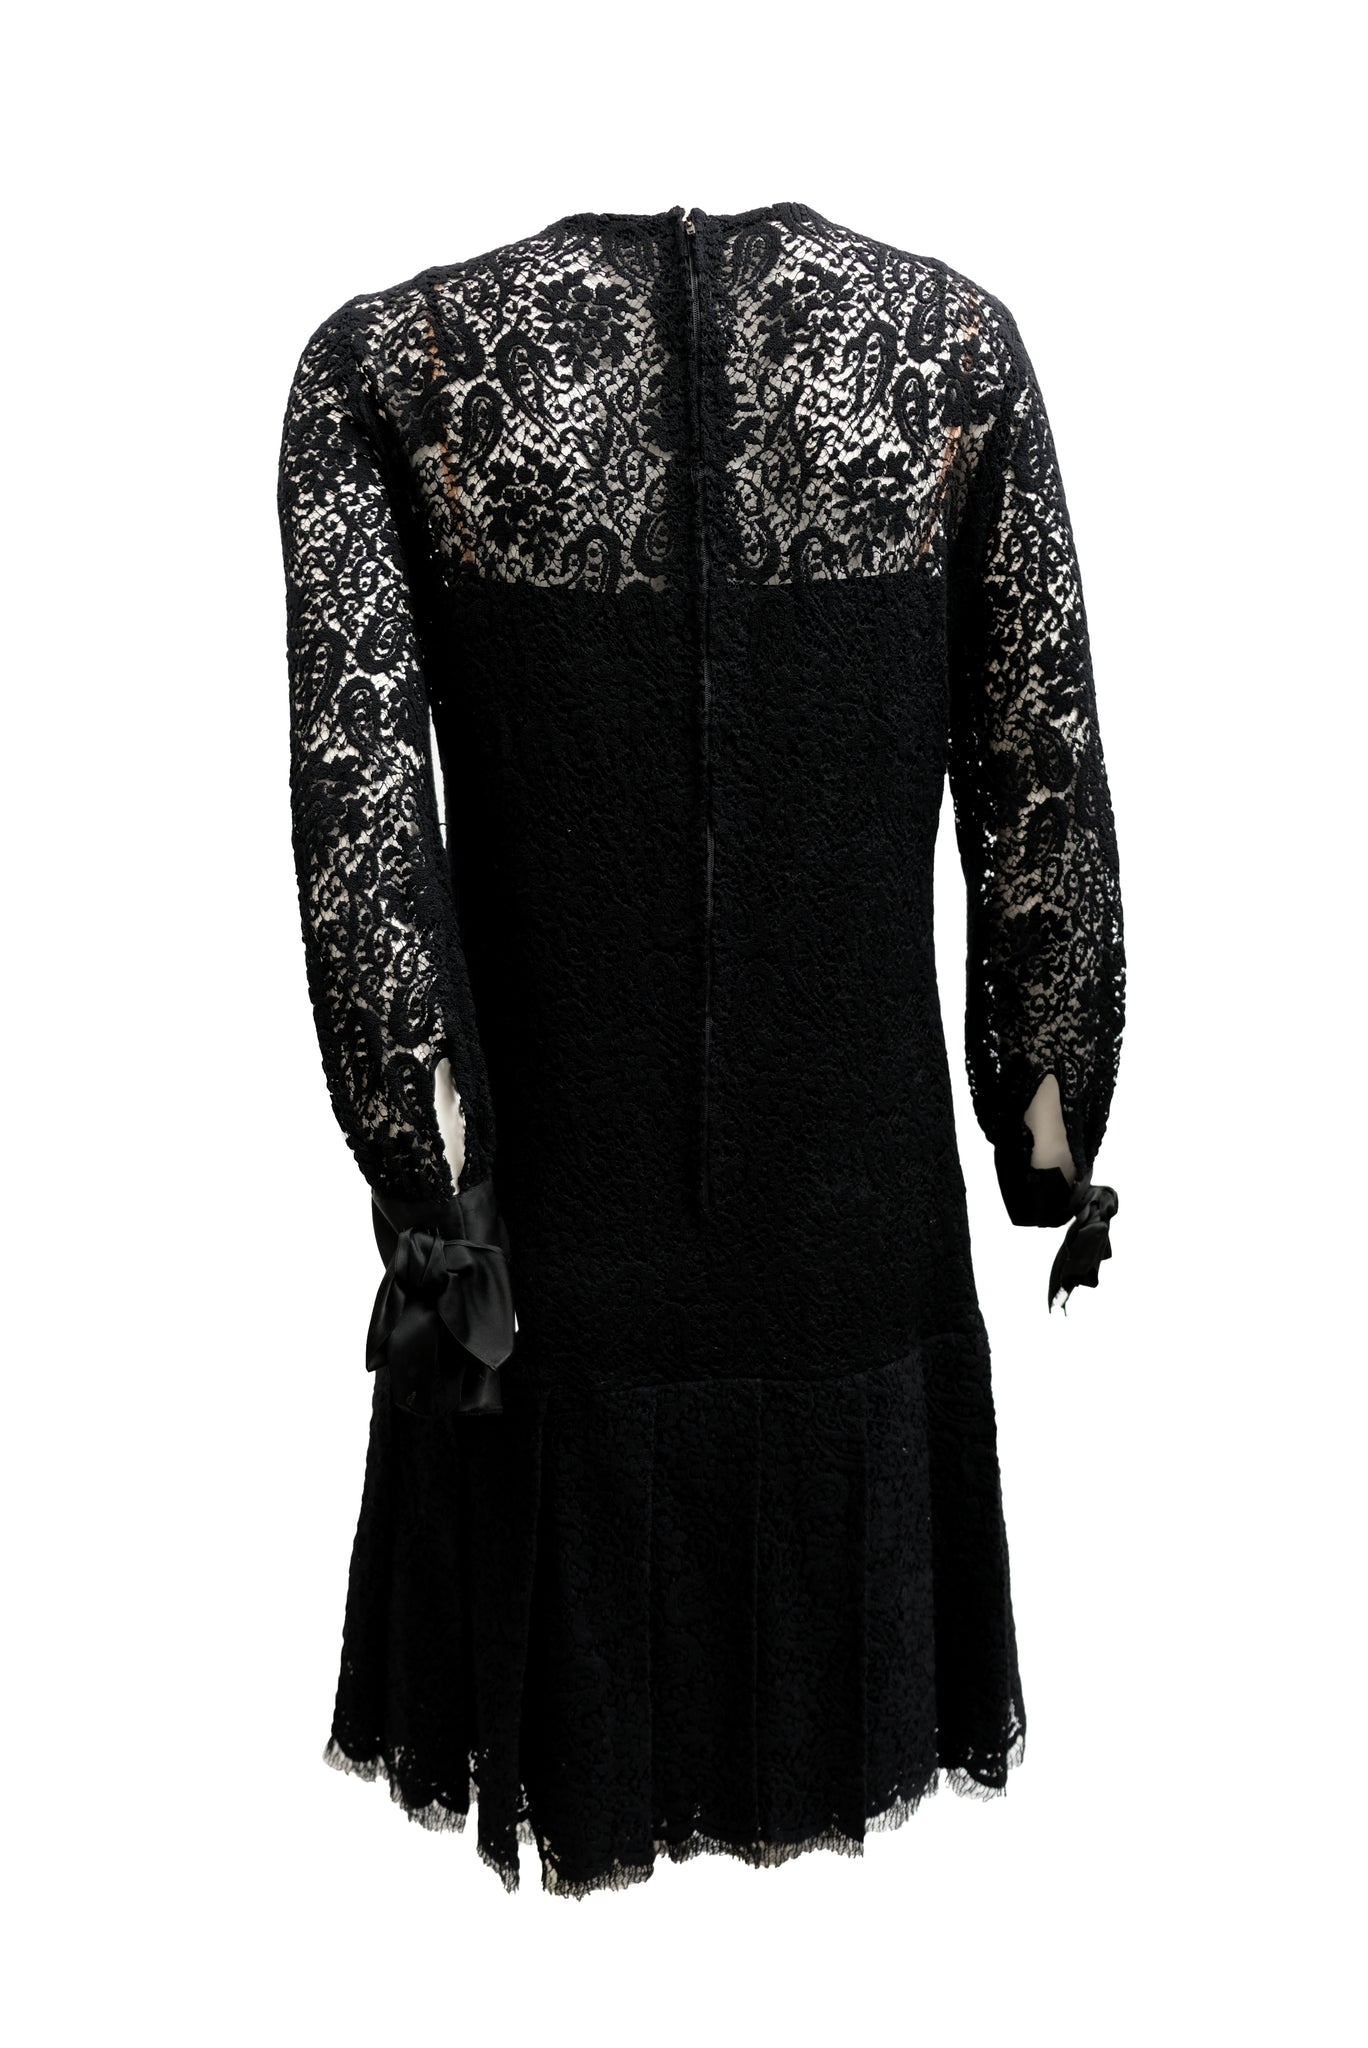 Christian Dior Boutique 1960s Vintage Black Lace Cocktail Dress, UK10 ...